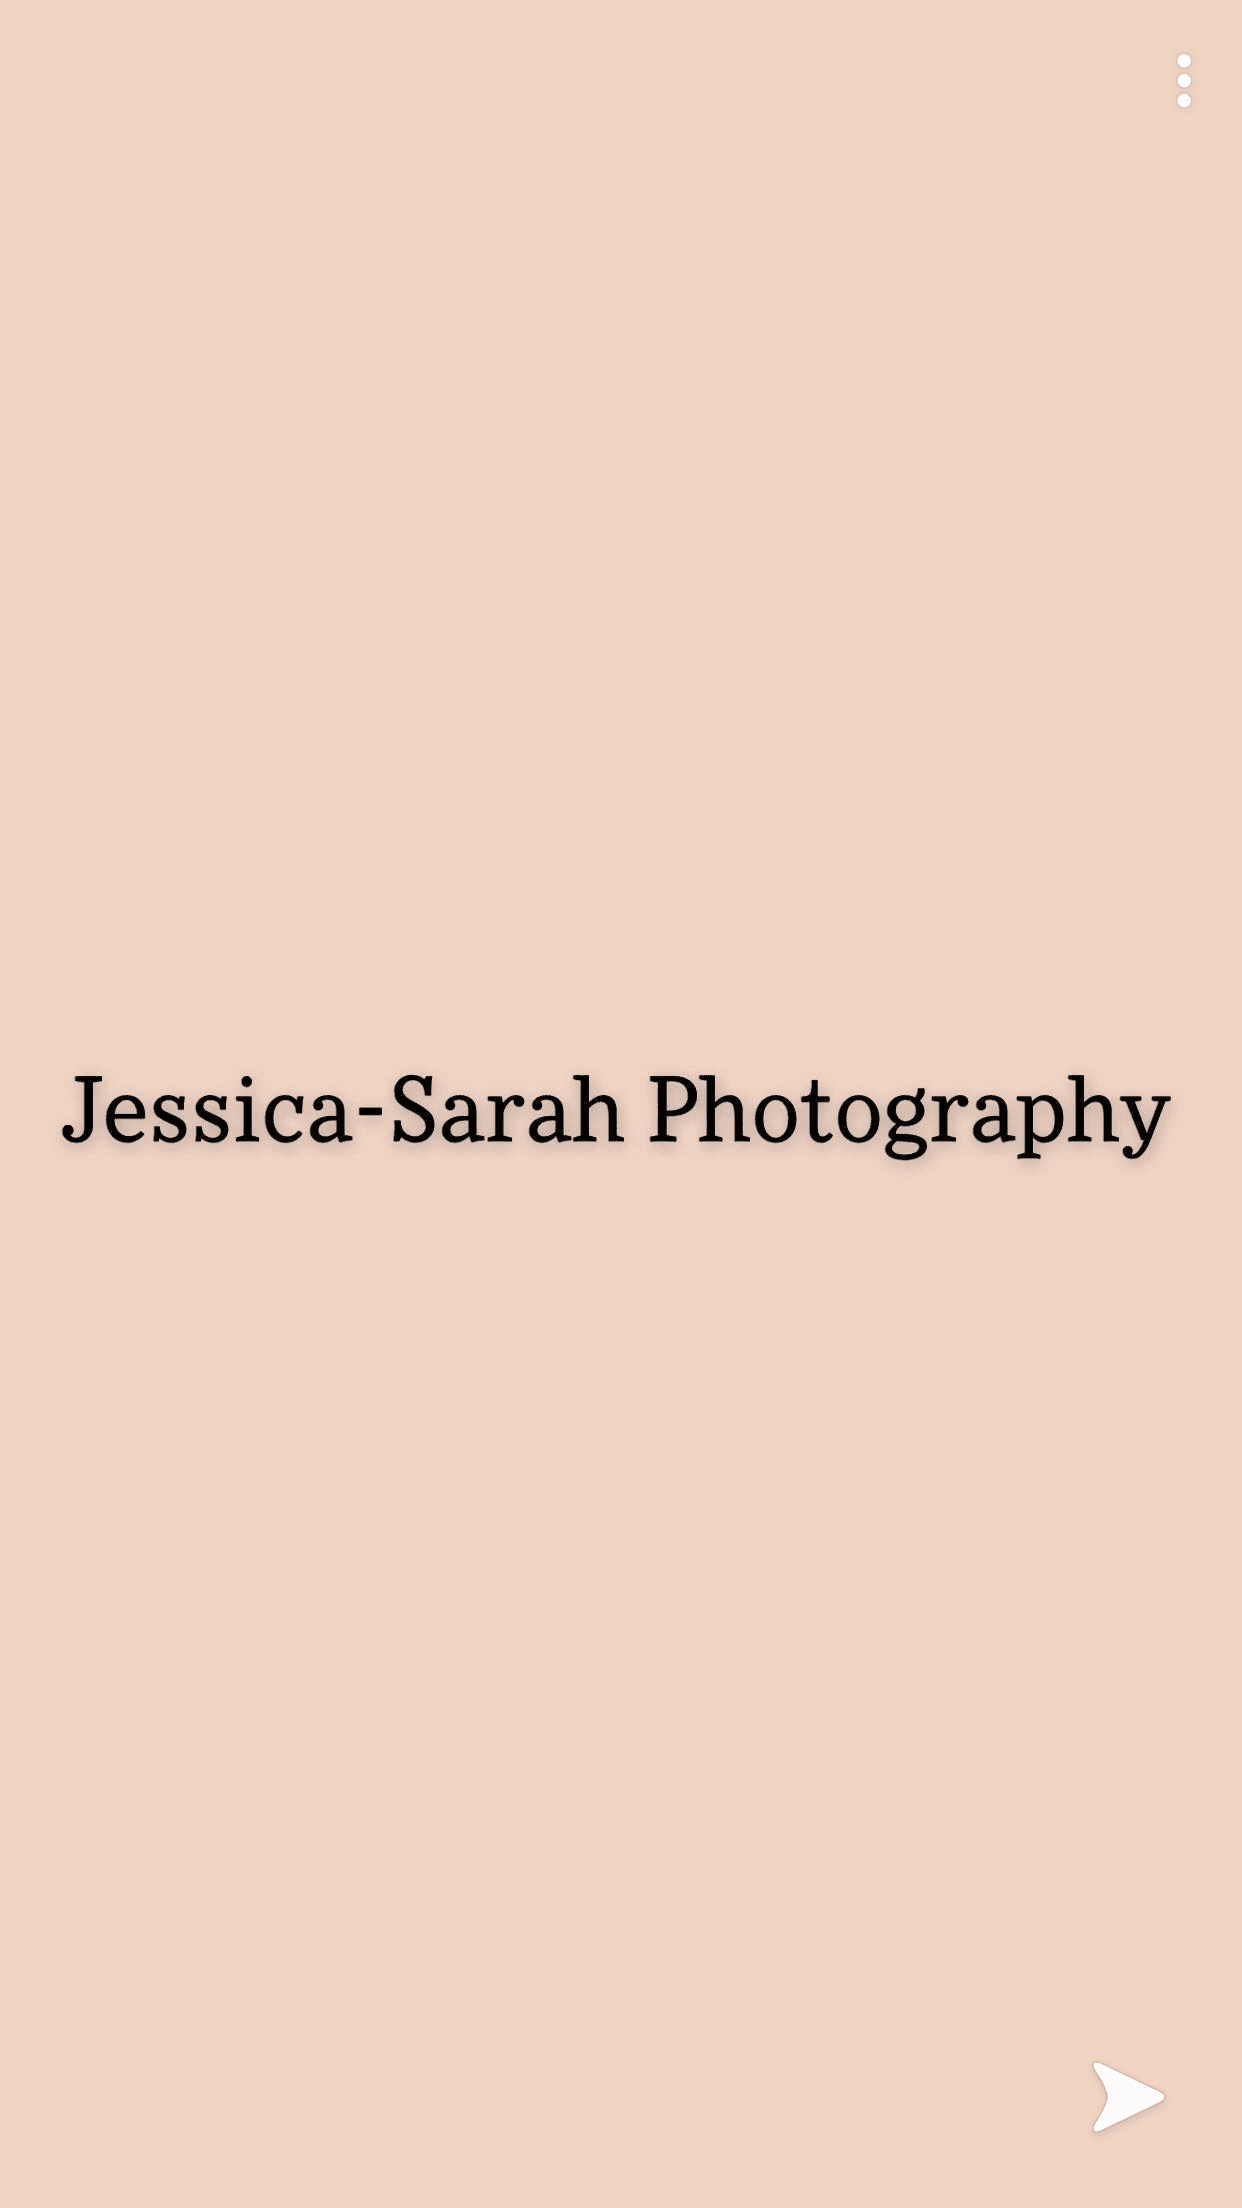 Jessica-Sarah Photography